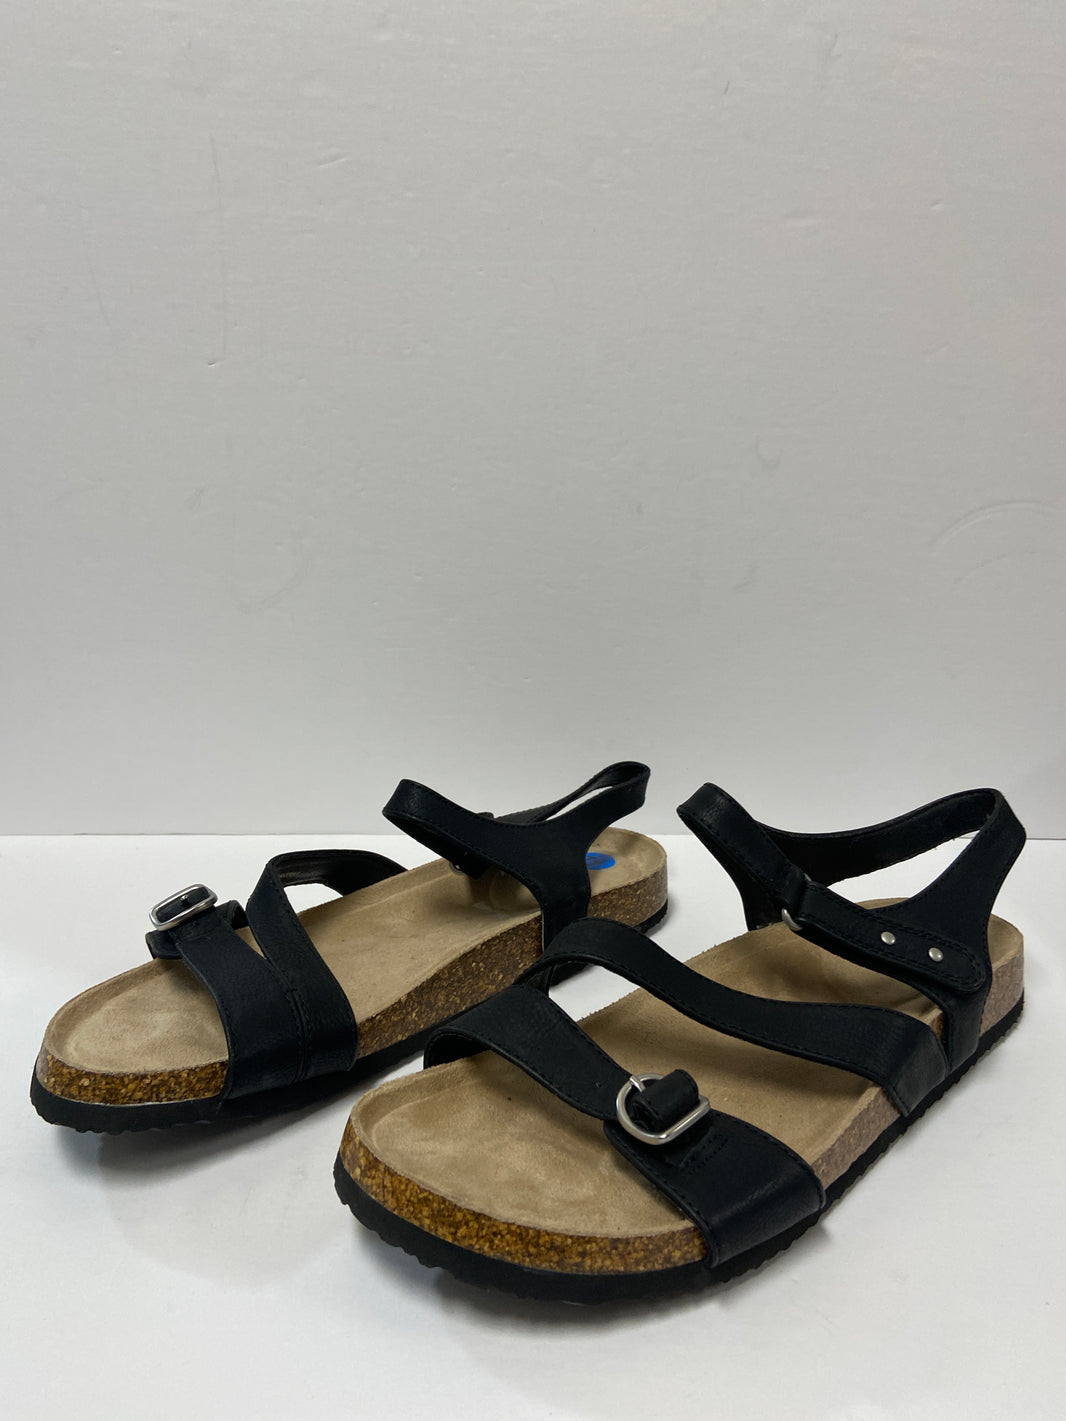 Sandals – Clothes Mentor Palm Harbor FL #150